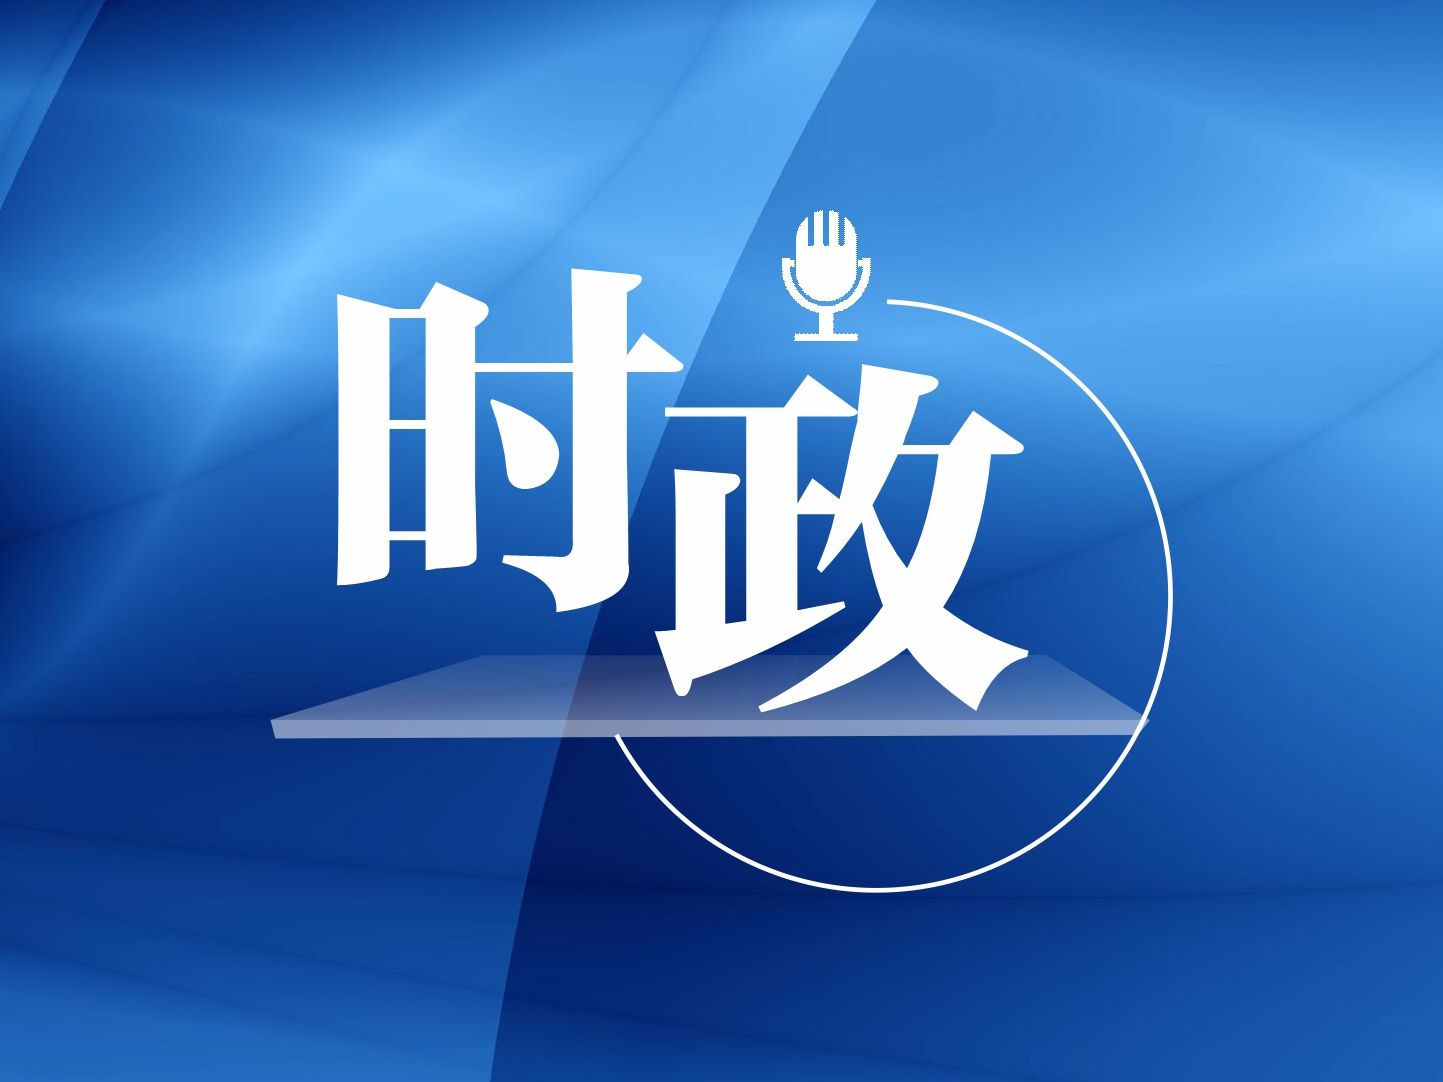 中共广东省委十二届十五次全会在广州召开